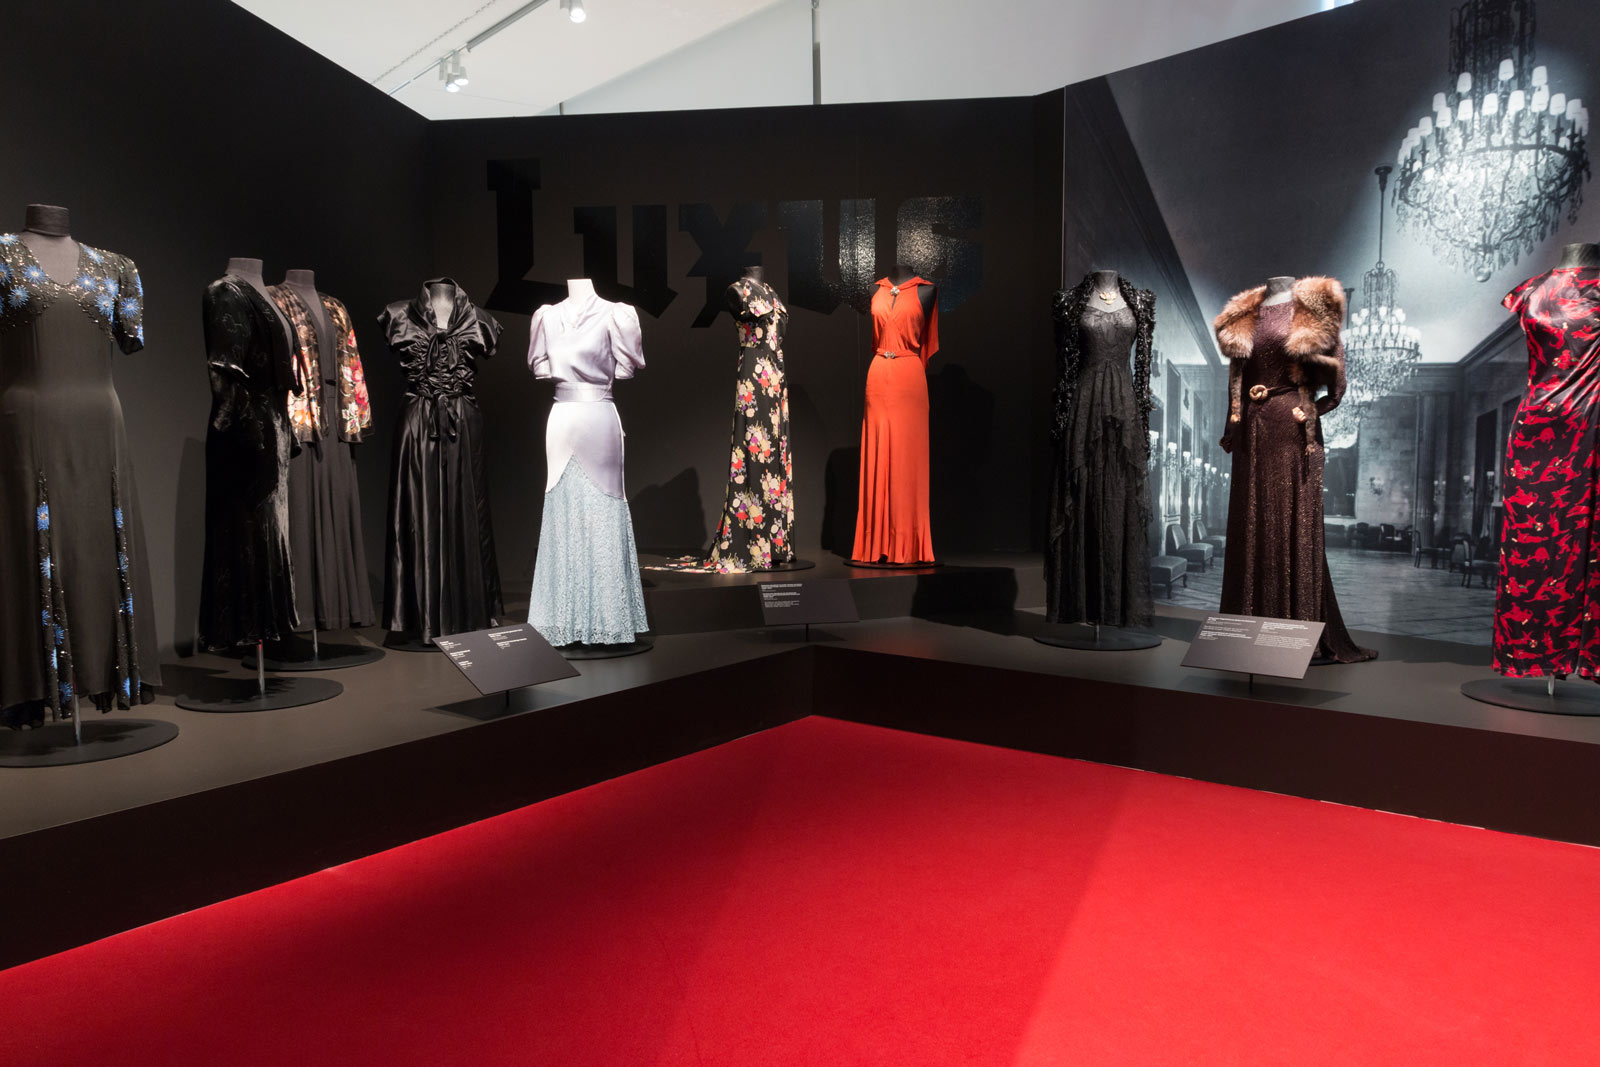 Das Referenzbild für Ausstellungsgestaltung aus der Sonderausstellung „Glanz und Grauen. Mode im Dritten Reich“ zeigt eine Exponatpräsentation historischer Kleidungsstücke.